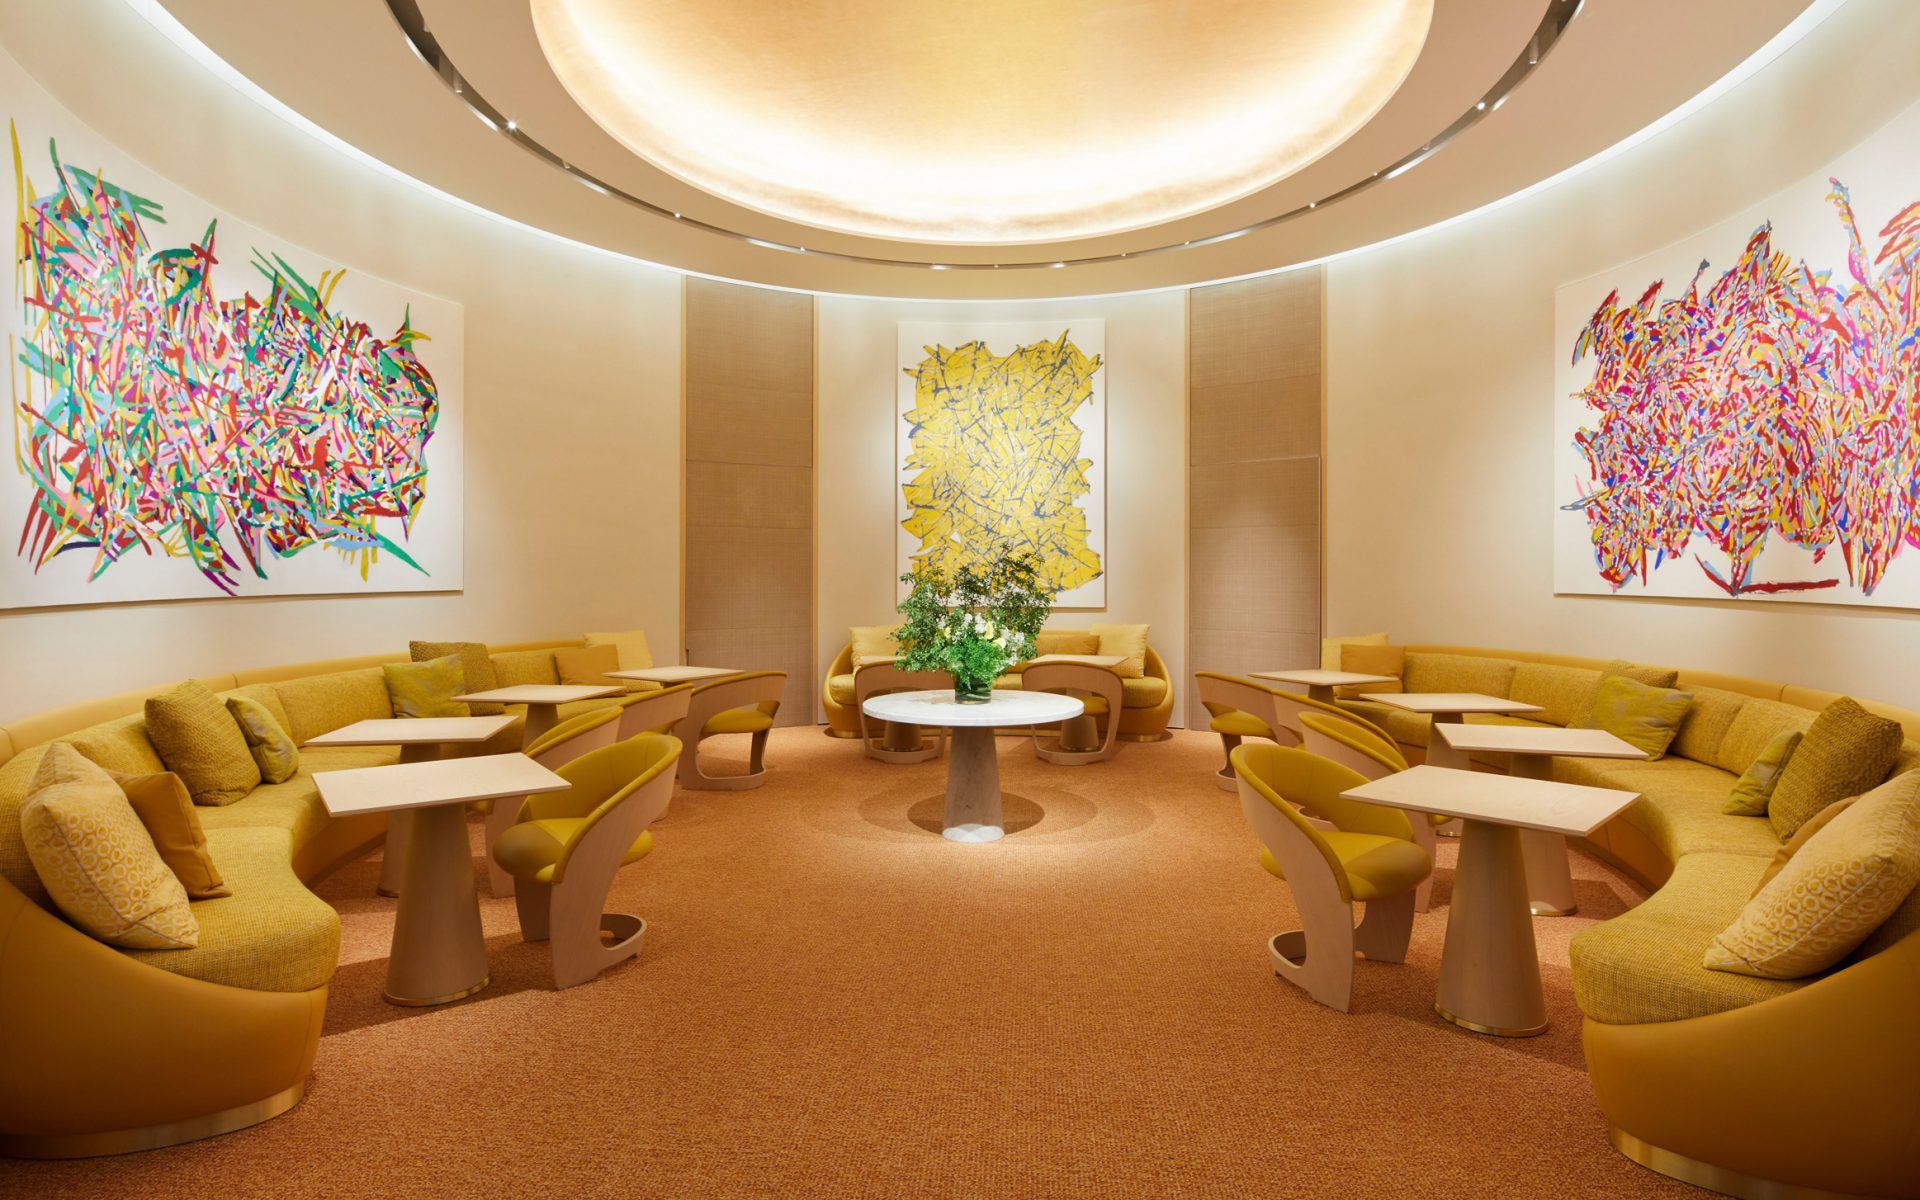 Inside Le Café V, Louis Vuitton's invite-only restaurant in Osaka